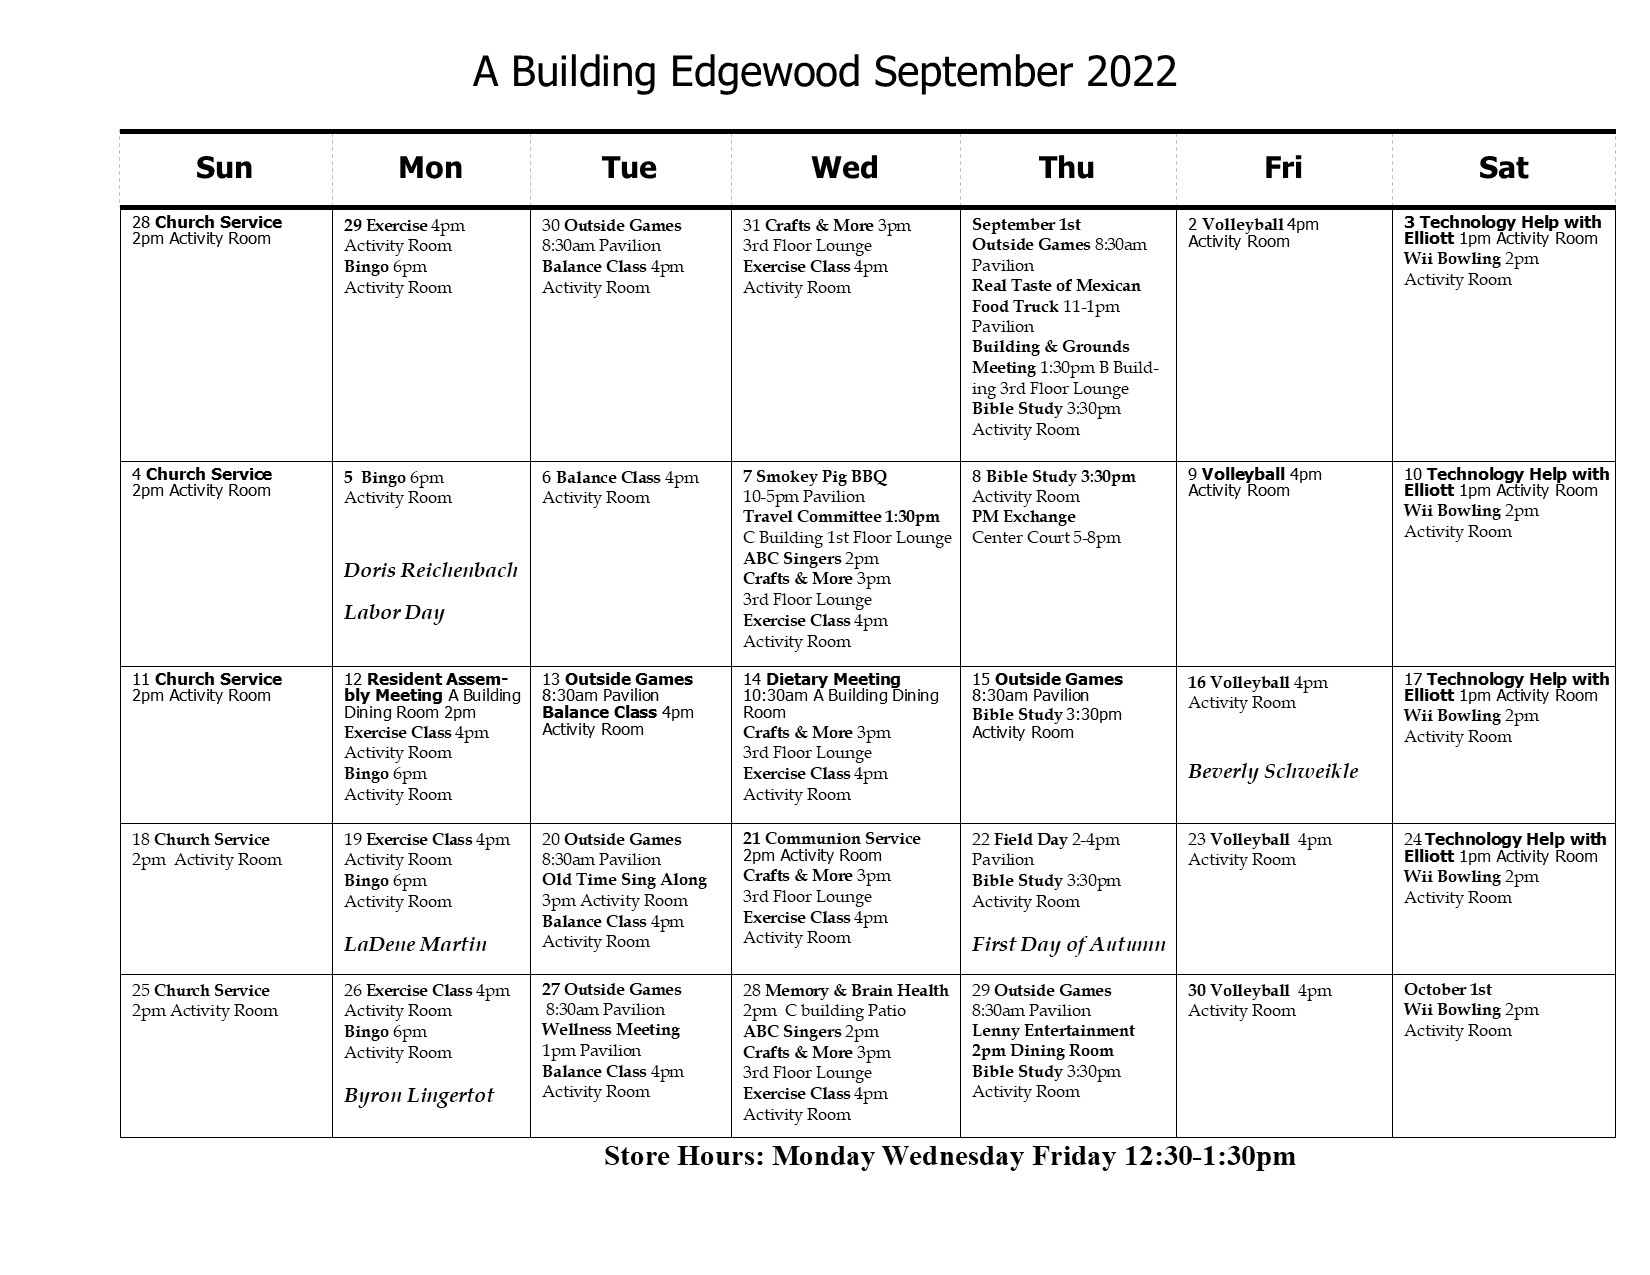 A Building September Calendar 2022